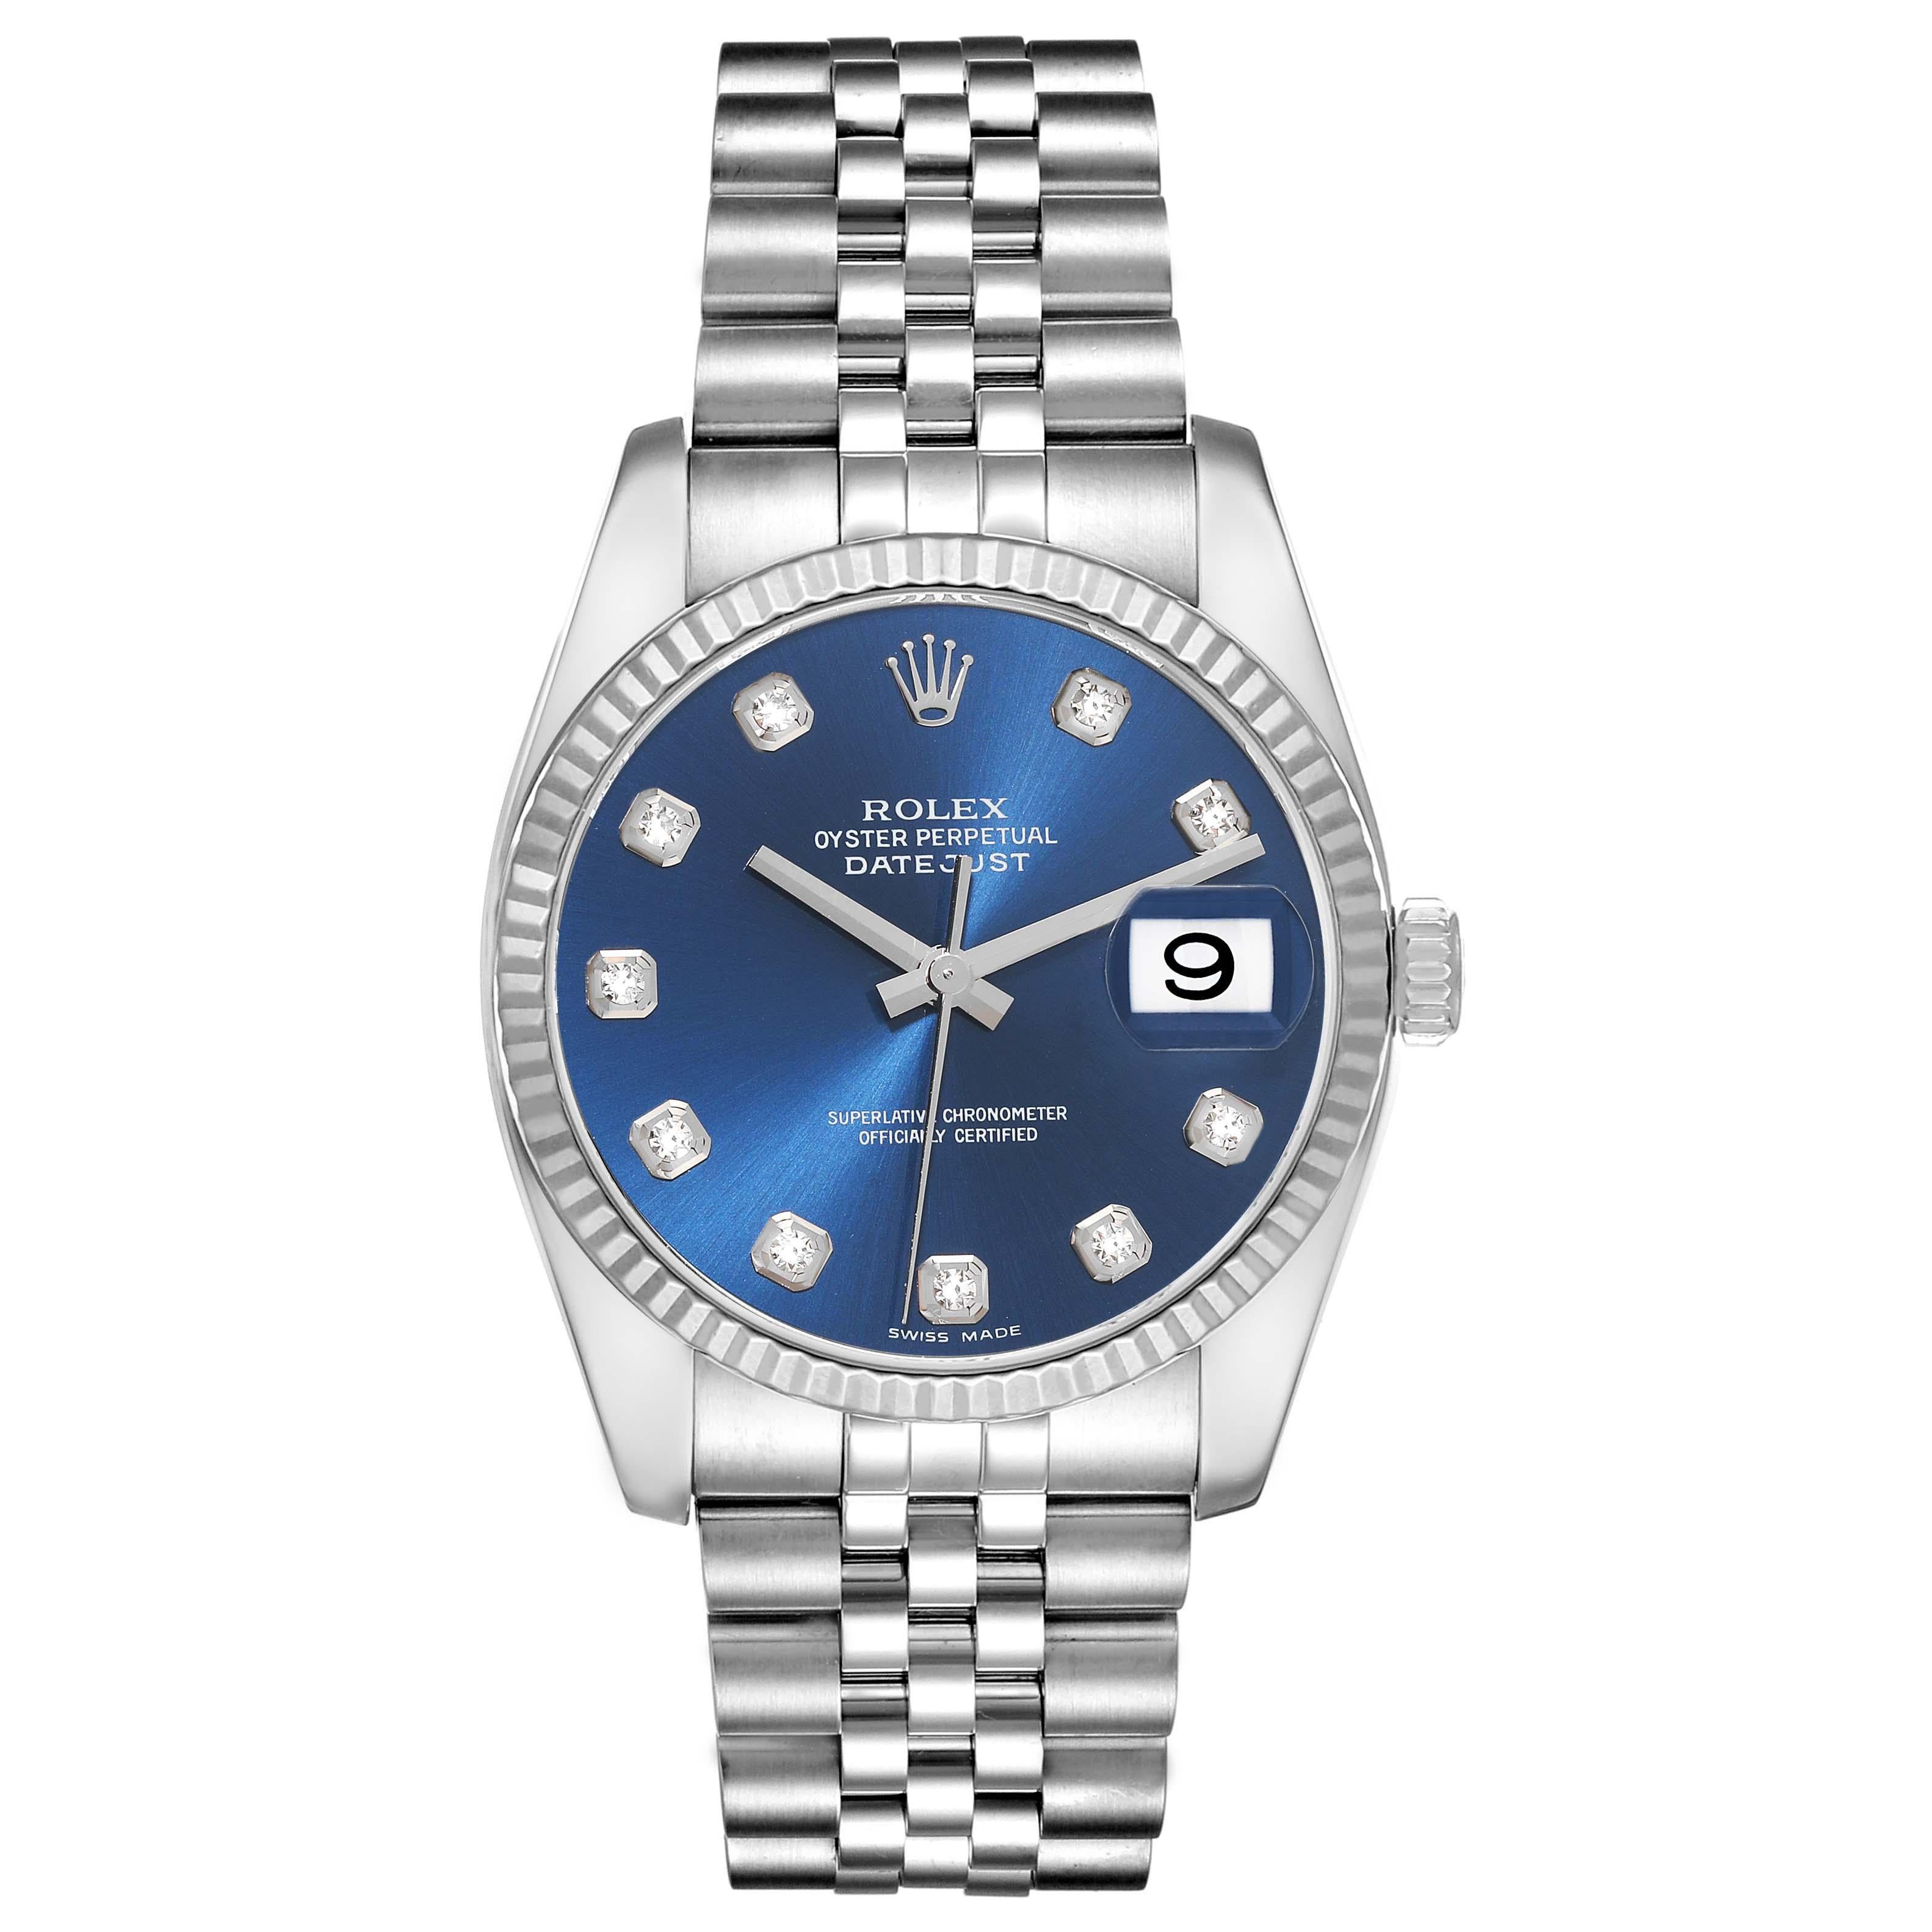 Rolex Datejust Steel White Gold Blue Diamond Dial Mens Watch 116234. Mouvement automatique à remontage automatique, officiellement certifié chronomètre. Boîtier en acier inoxydable de 36.0 mm de diamètre. Logo Rolex sur la couronne. Lunette cannelée